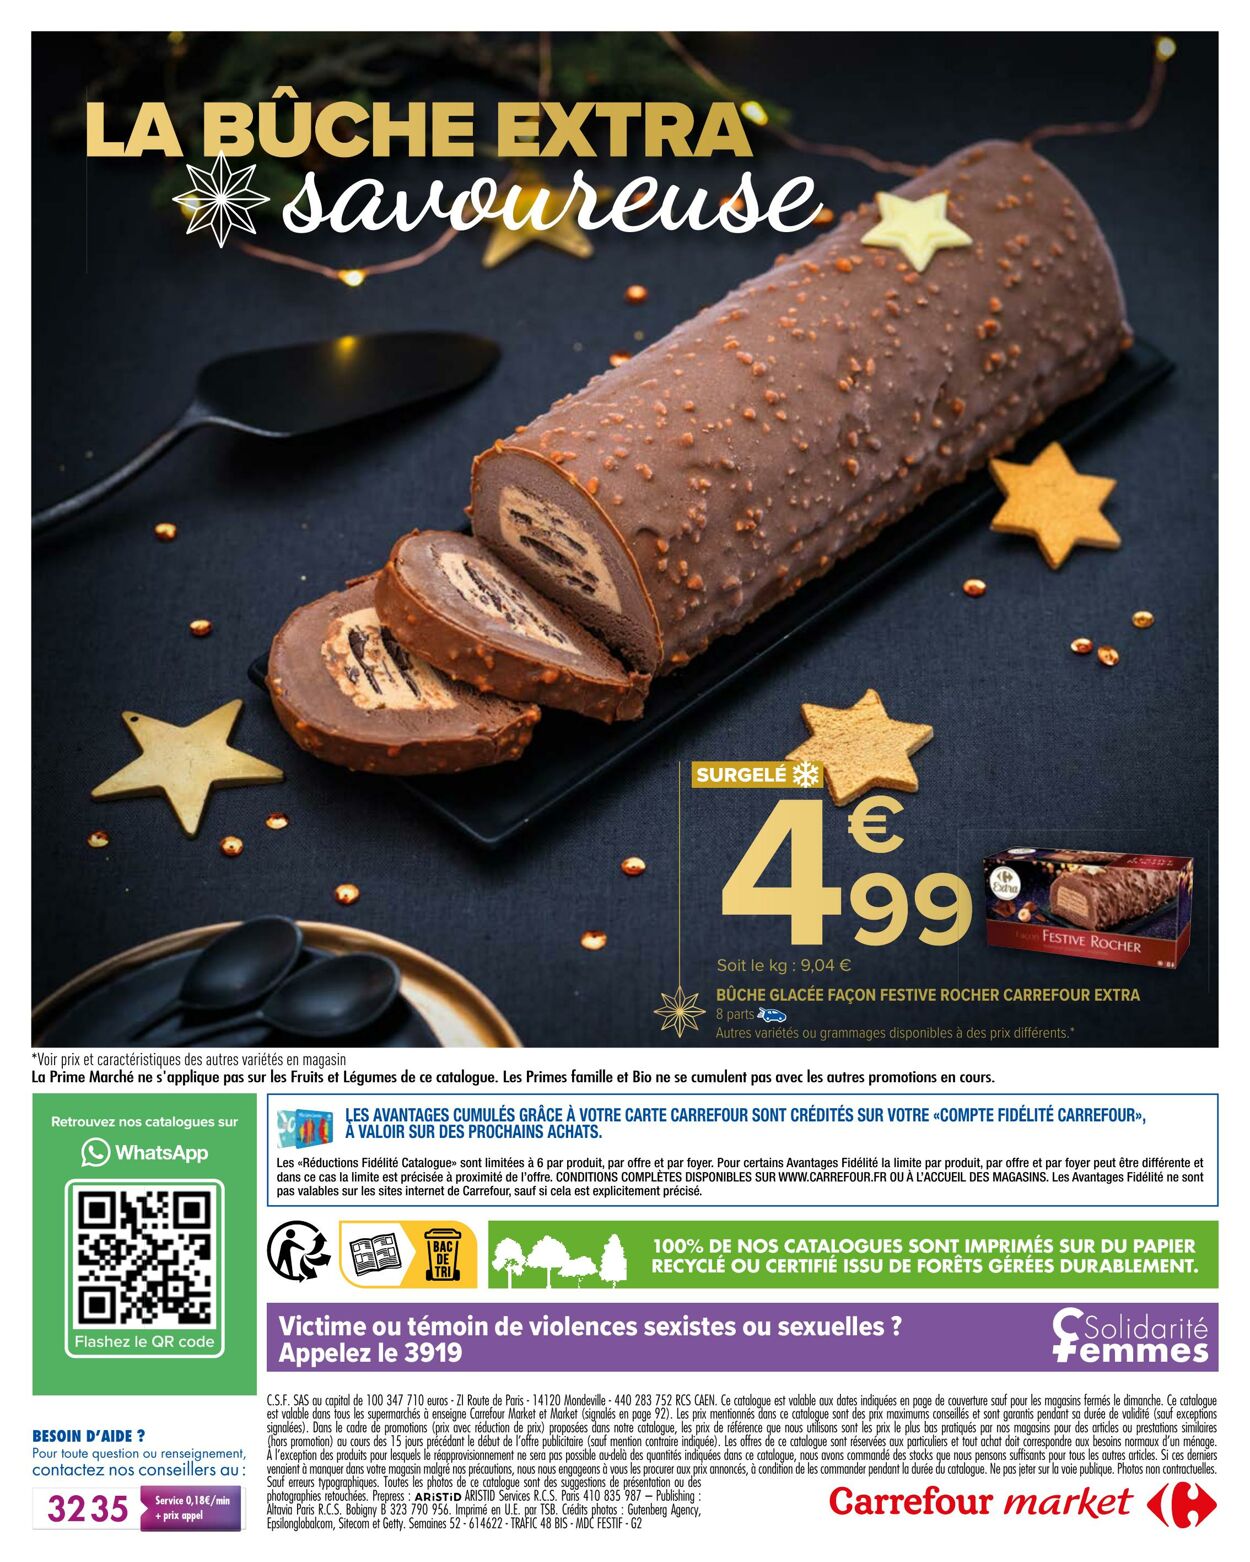 Catalogue Carrefour 29.11.2022 - 31.12.2022